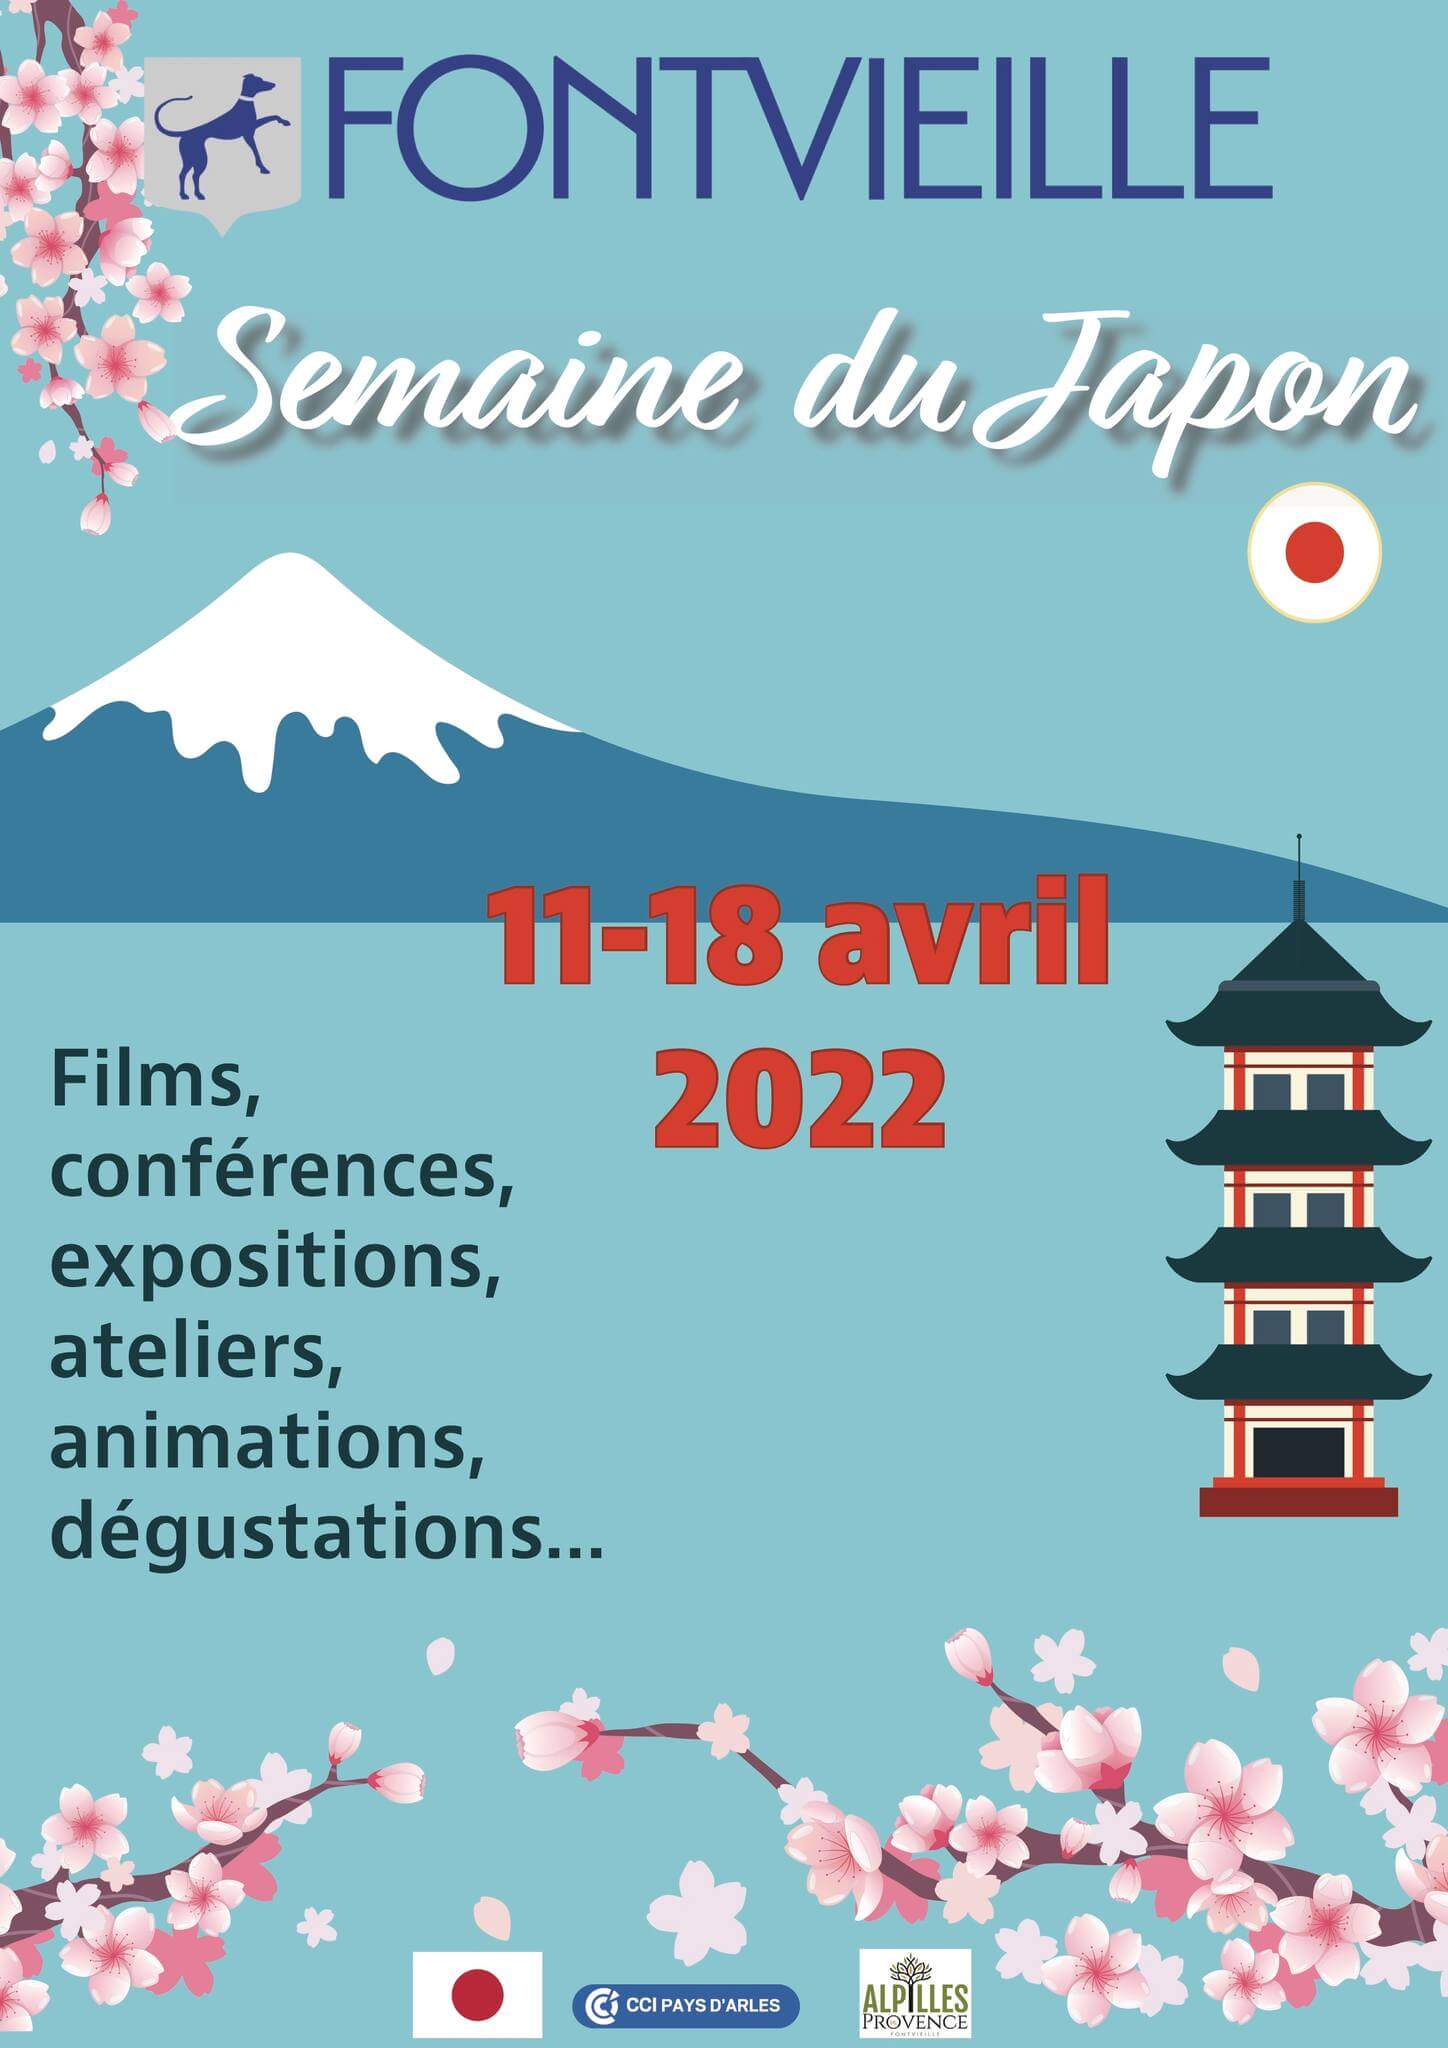 Semaine du Japon 2022 à Fontvieille Alpilles